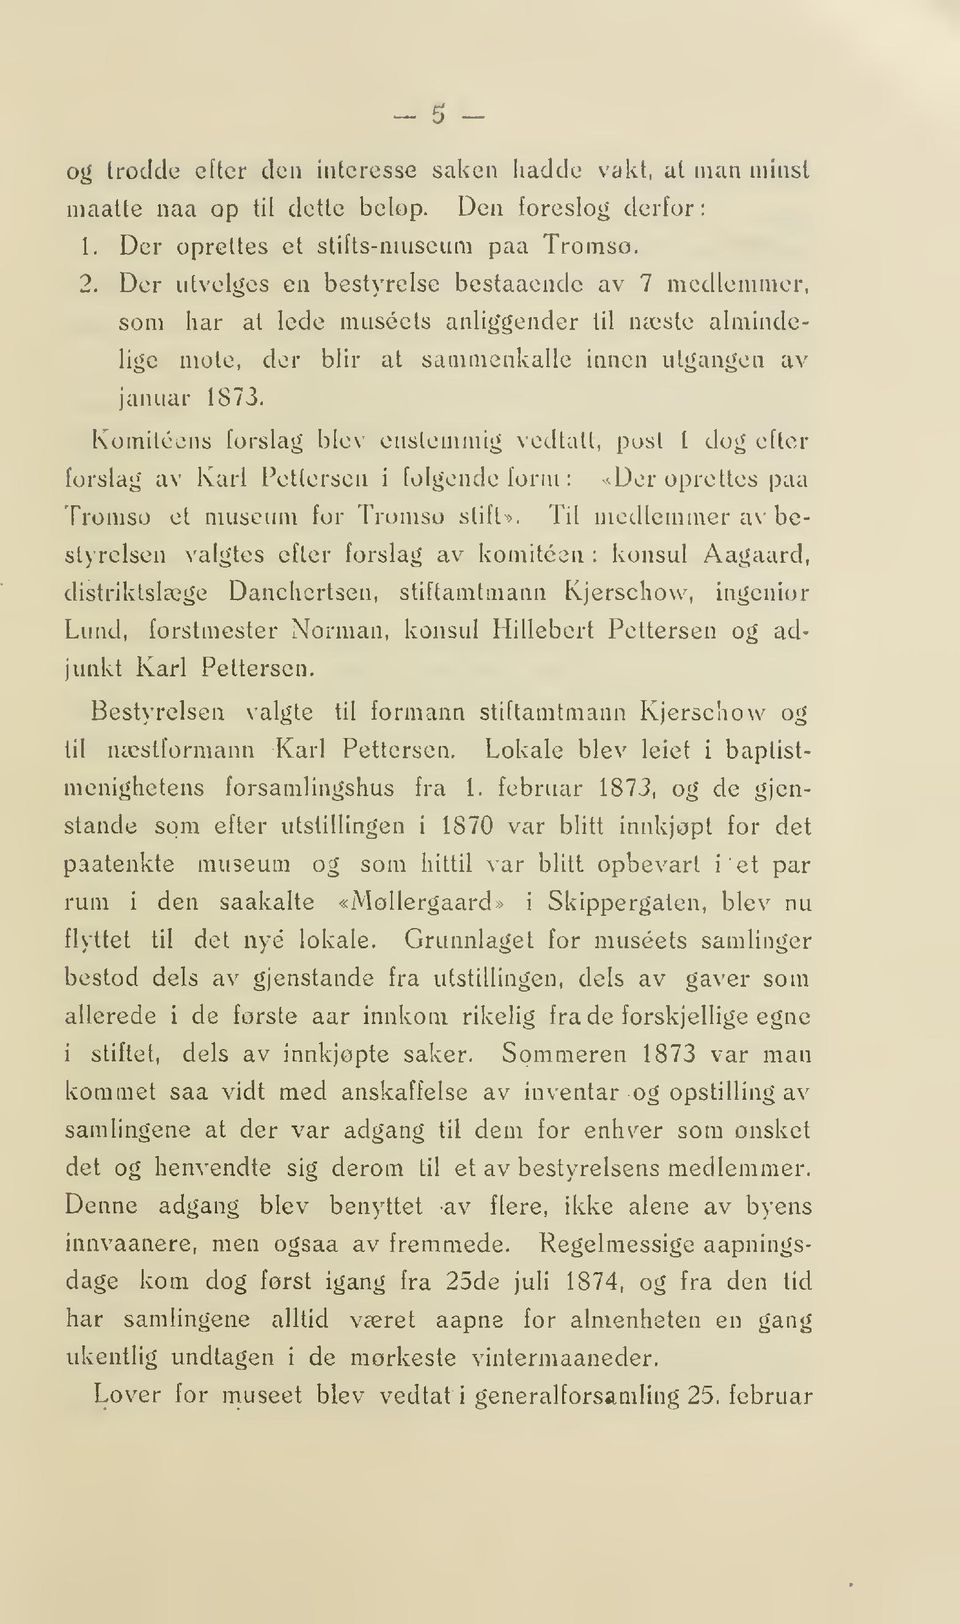 Komiteens forslag blev enstemmig vedtatt, post I dog efter forslag av Karl Pettersen i folgonde form : v^der oprettes paa Tromso et museum for Tromso stift >.